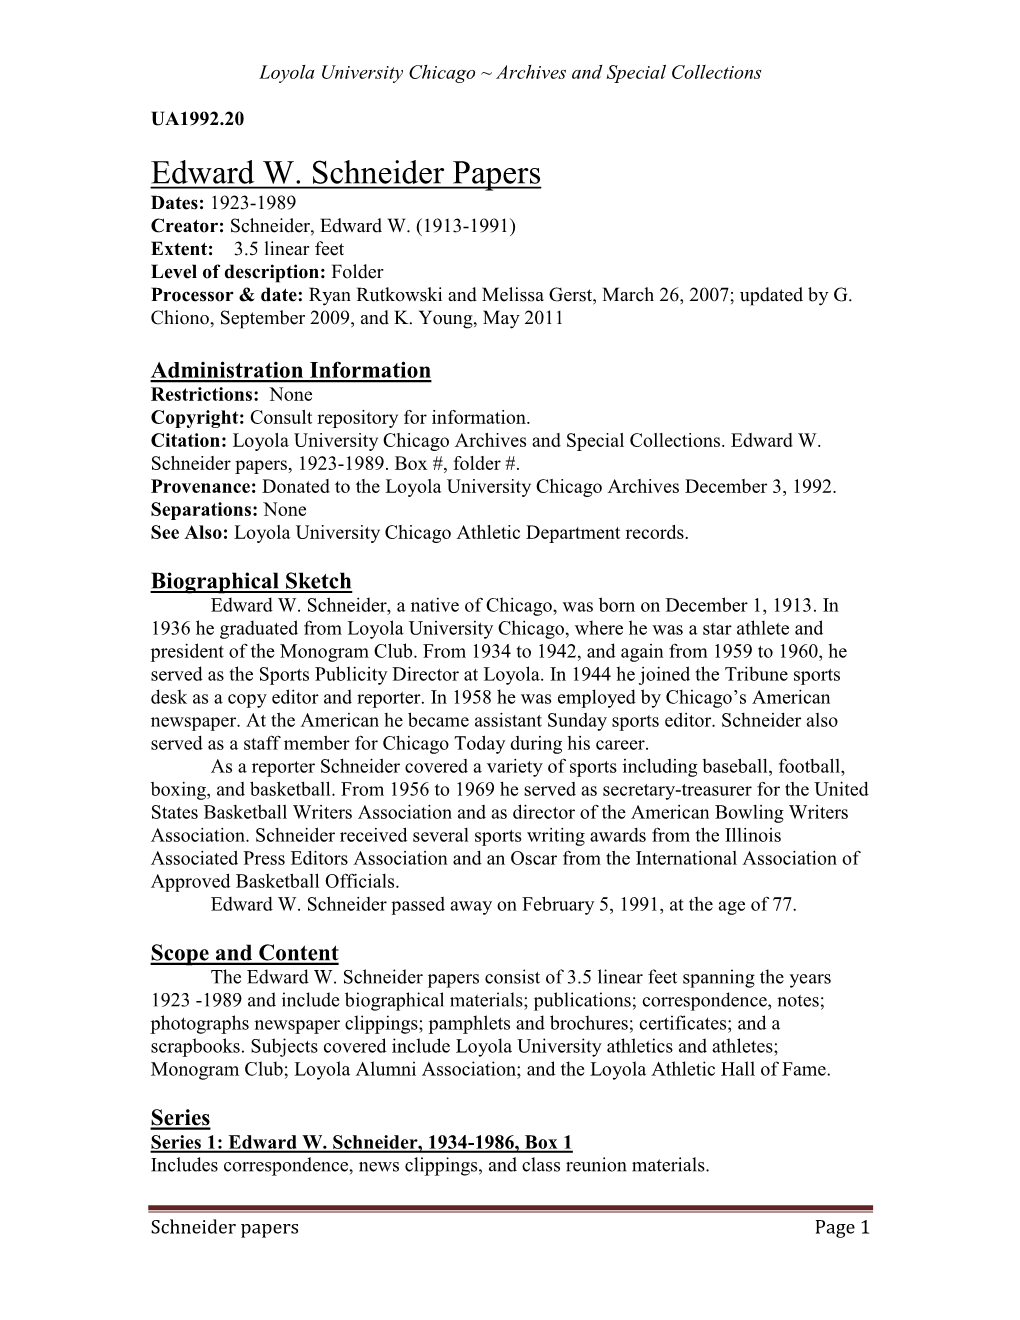 Edward W. Schneider Papers, 1923-1989